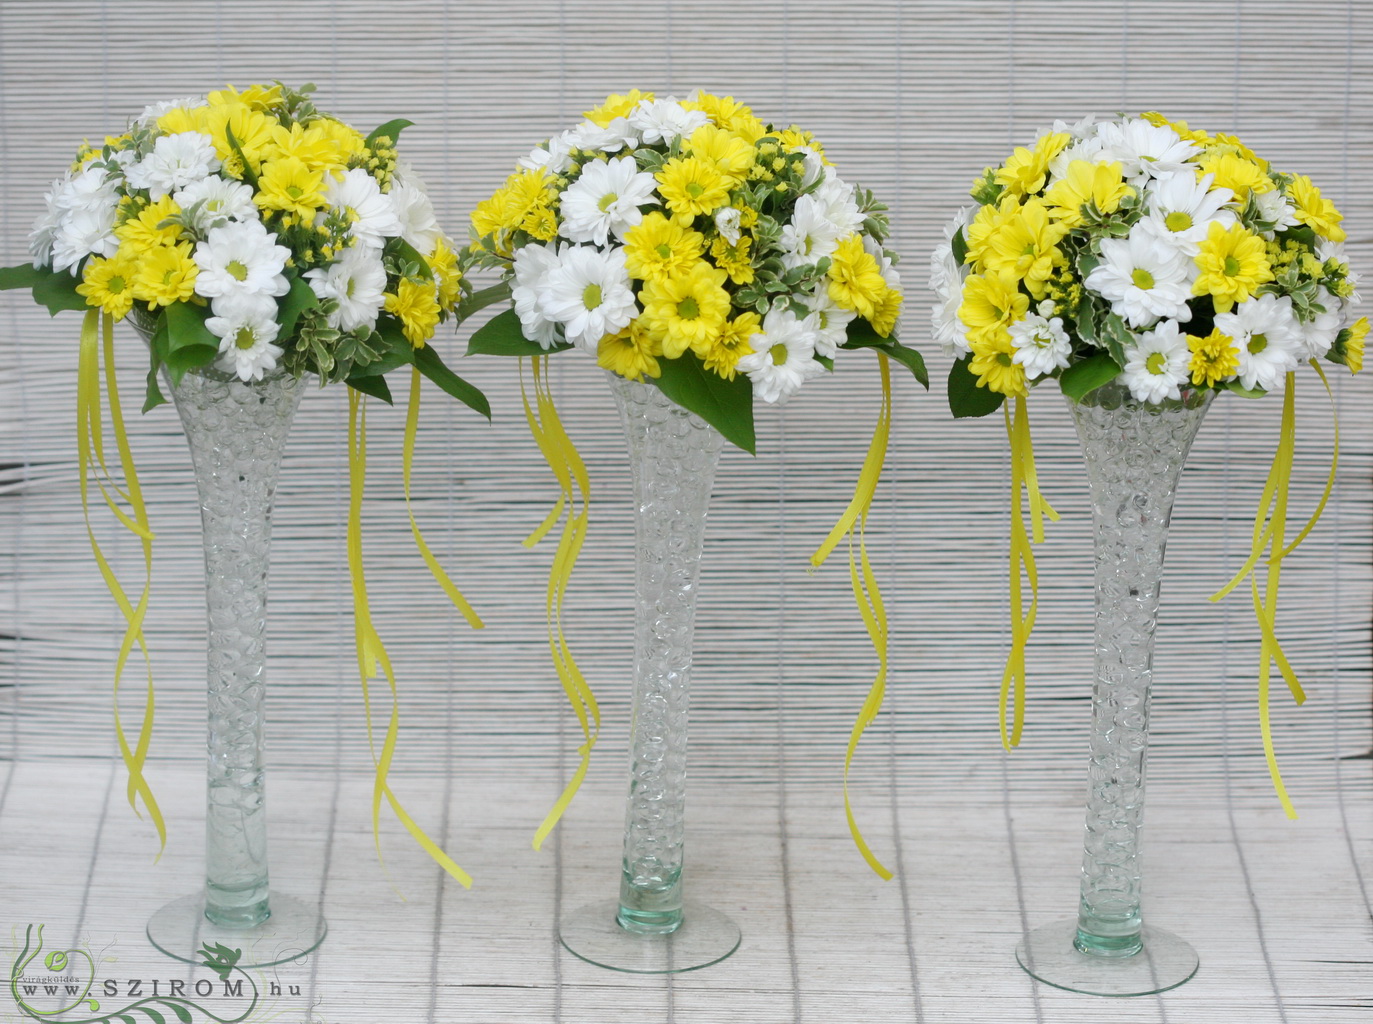 Virágküldés Budapest - Magas vázás asztaldísz margarétakrizivel 1 db (sárga, fehér), esküvő